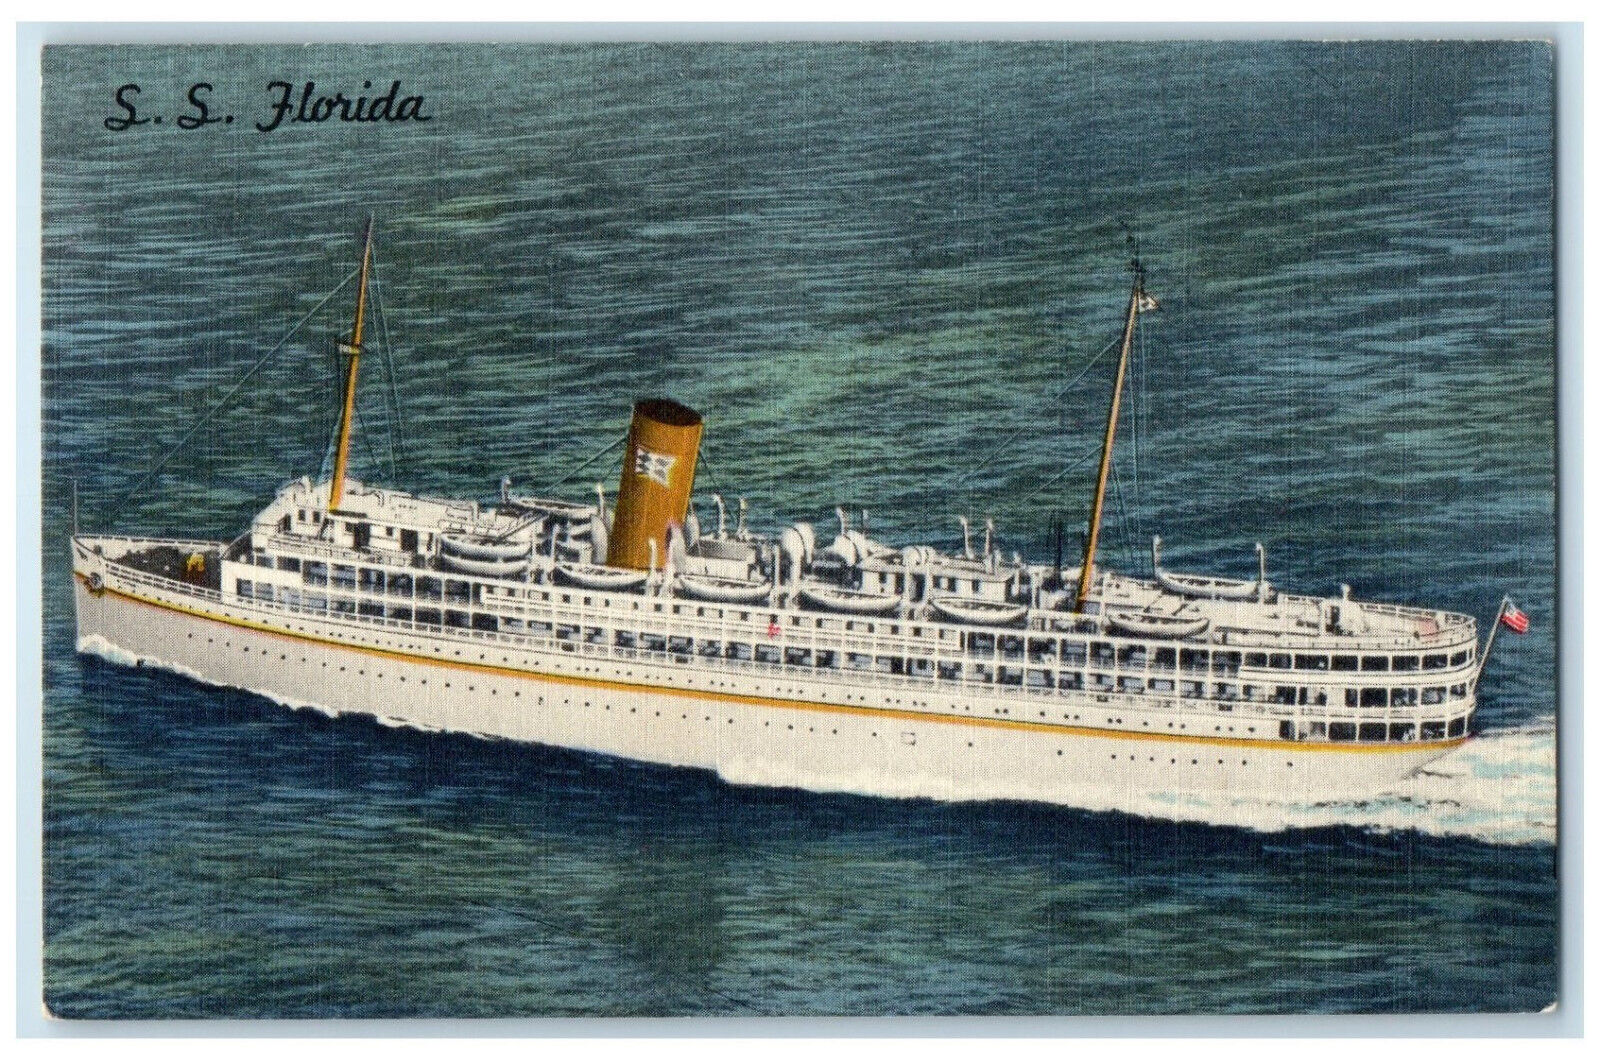 1961 S.S. Florida Nassau Cruise P&O Steamship Co. Miami Florida Postcard